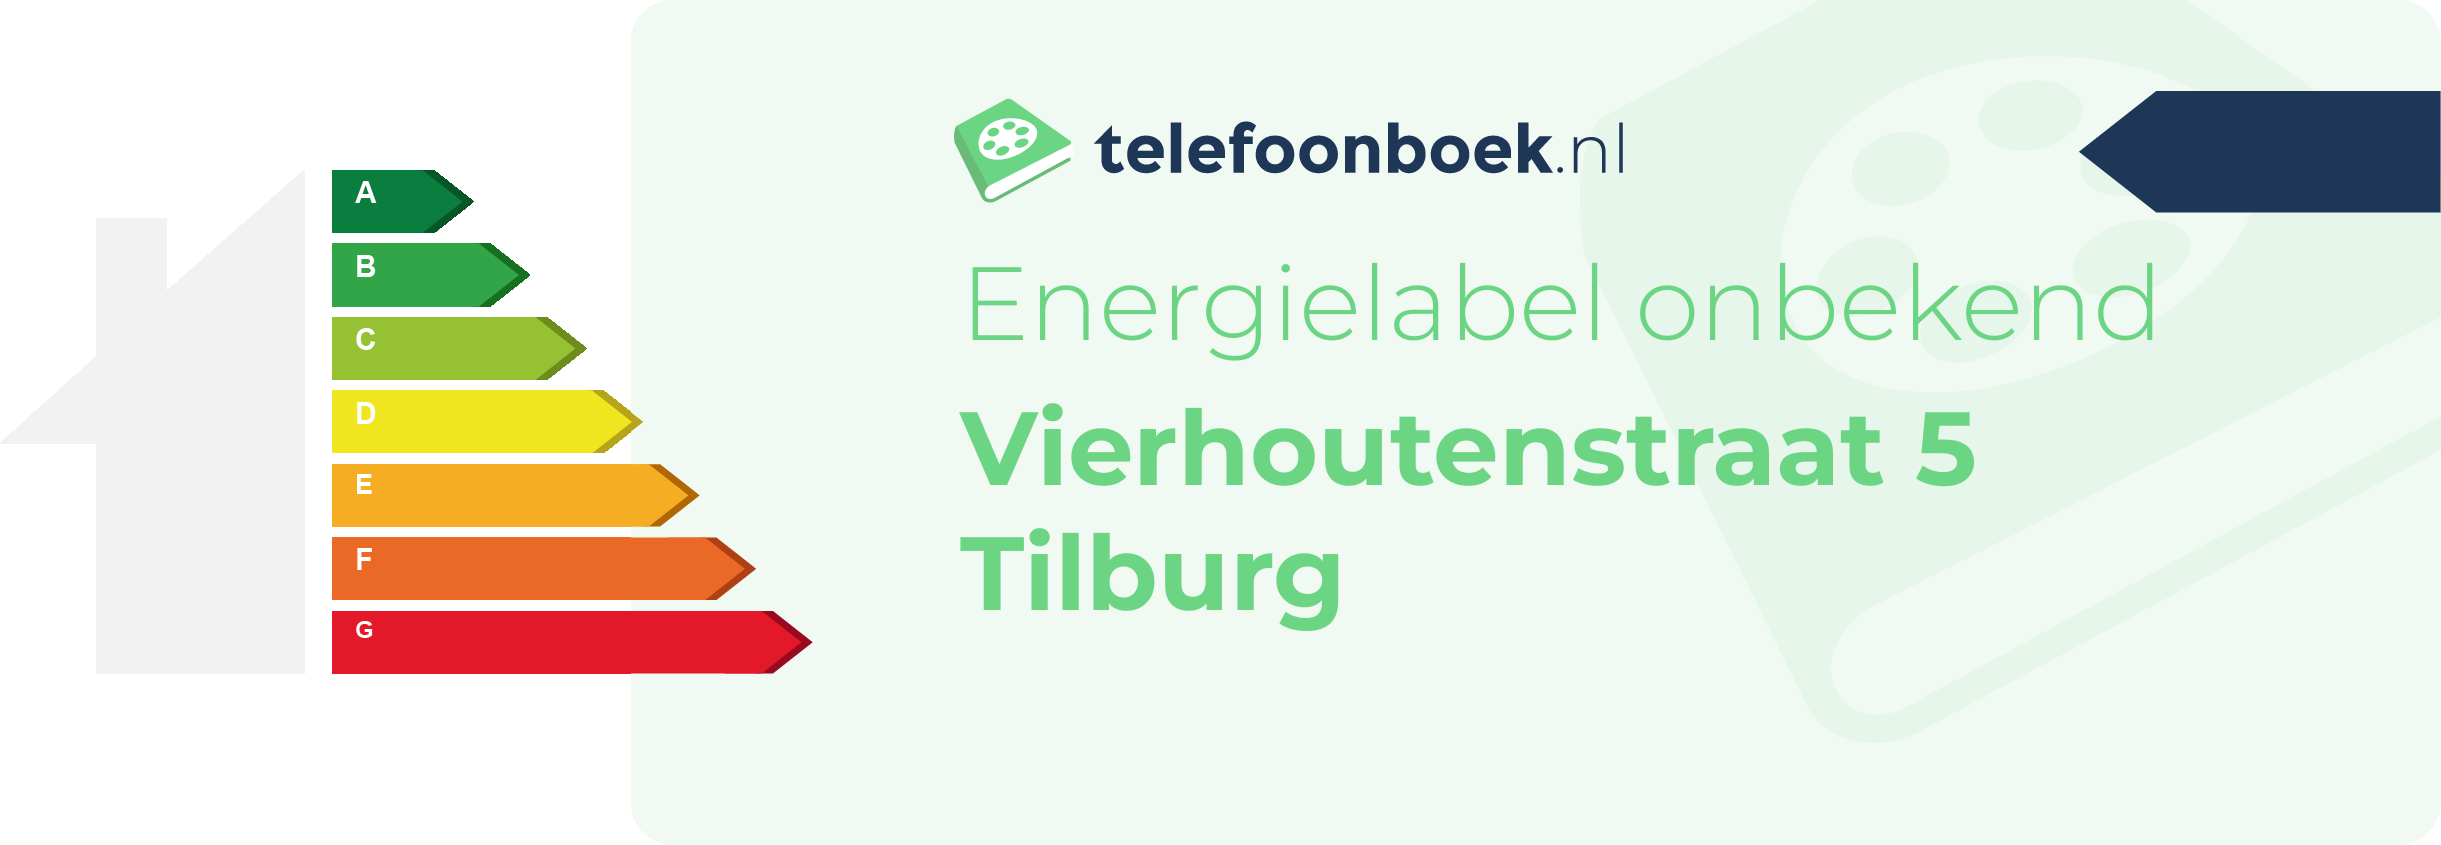 Energielabel Vierhoutenstraat 5 Tilburg